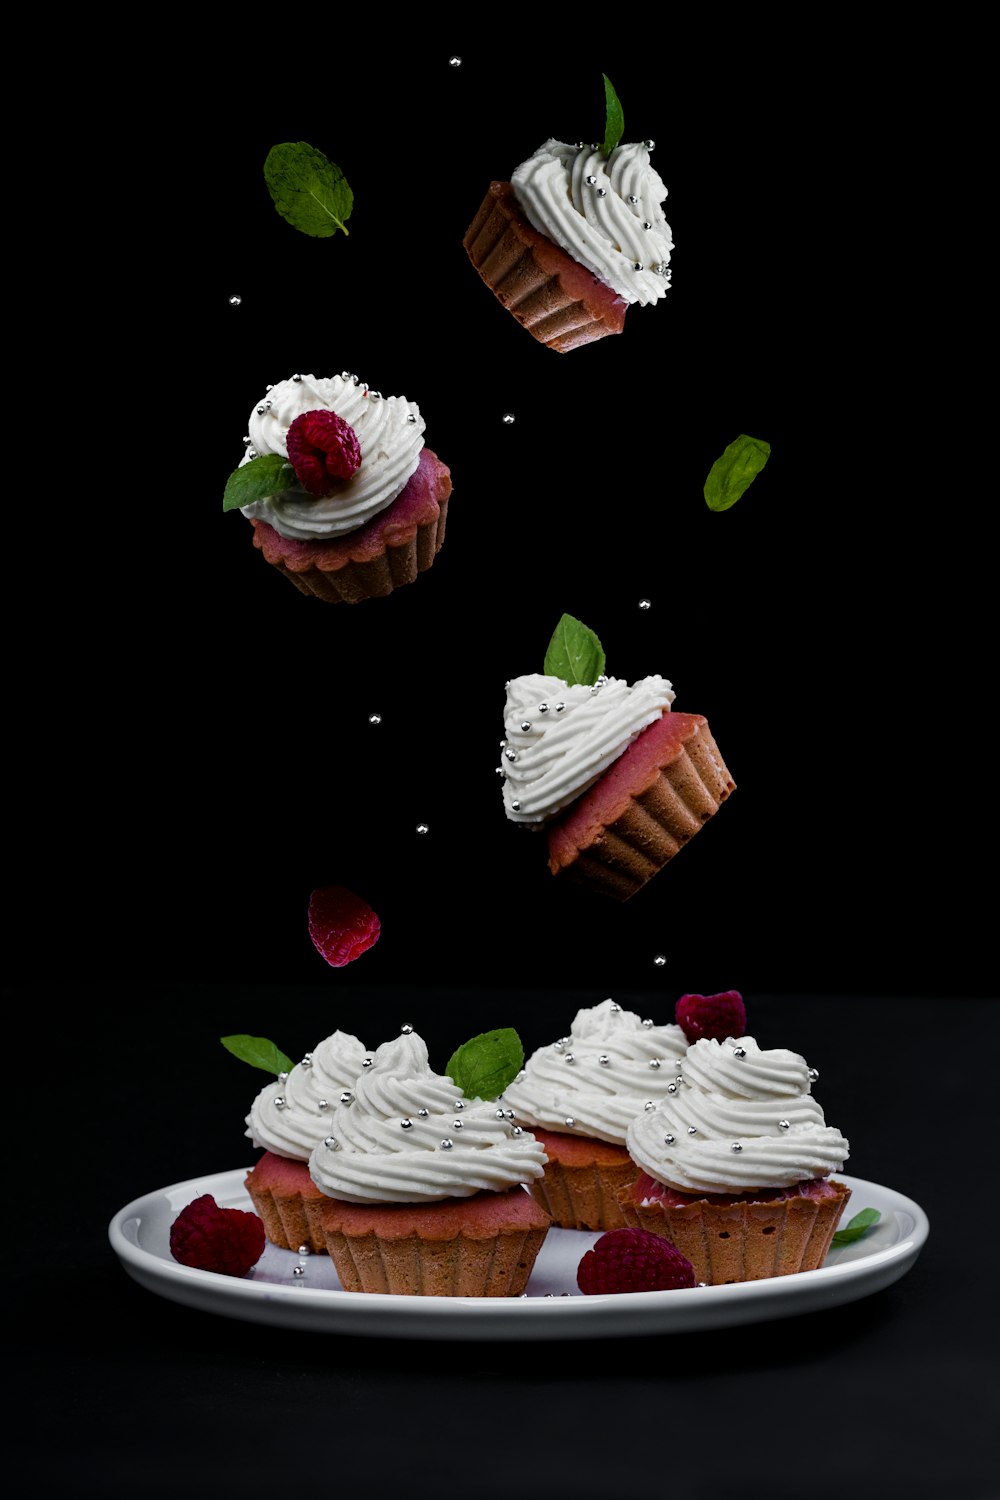 Erdbeer- und Schokoladenkuchen in Scheiben geschnitten auf weißem Keramikteller